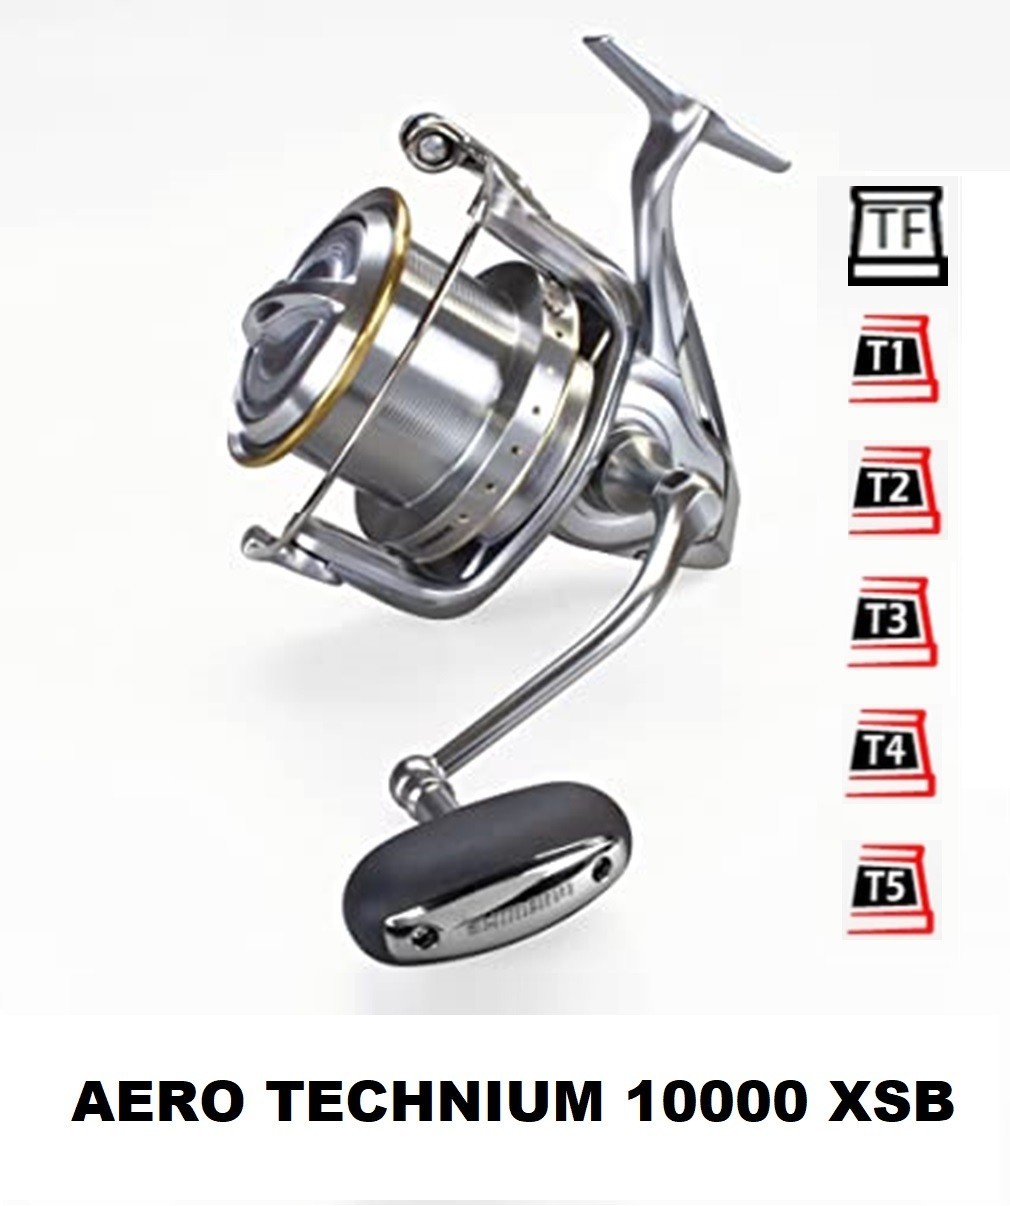 shimano aero technium 10000 xsb